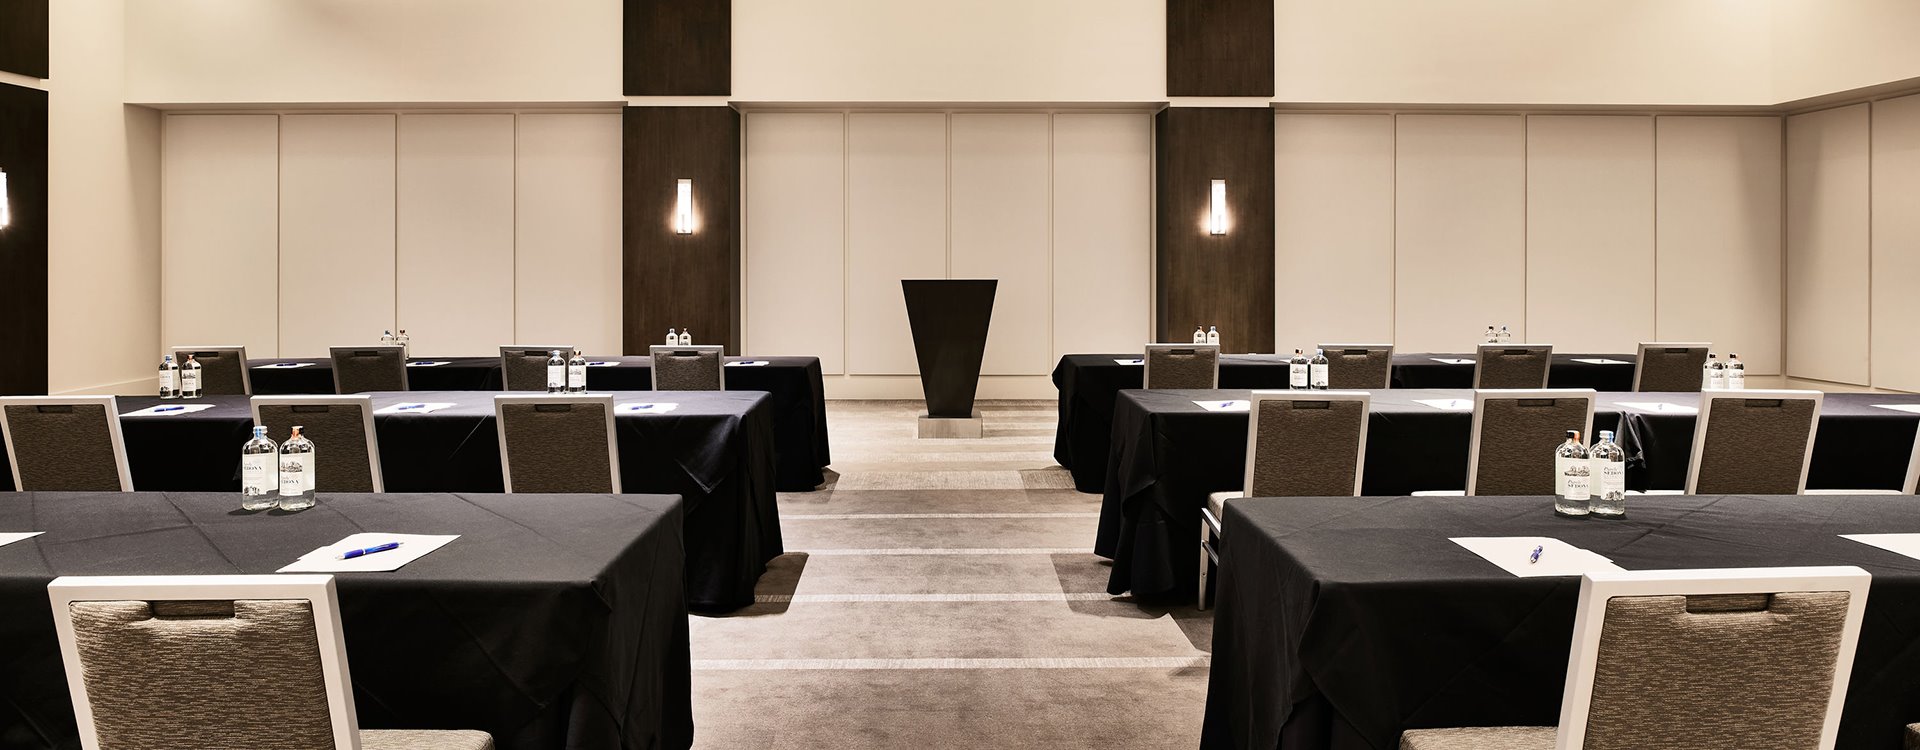 Meetings & Events in Hotel Scottsdale